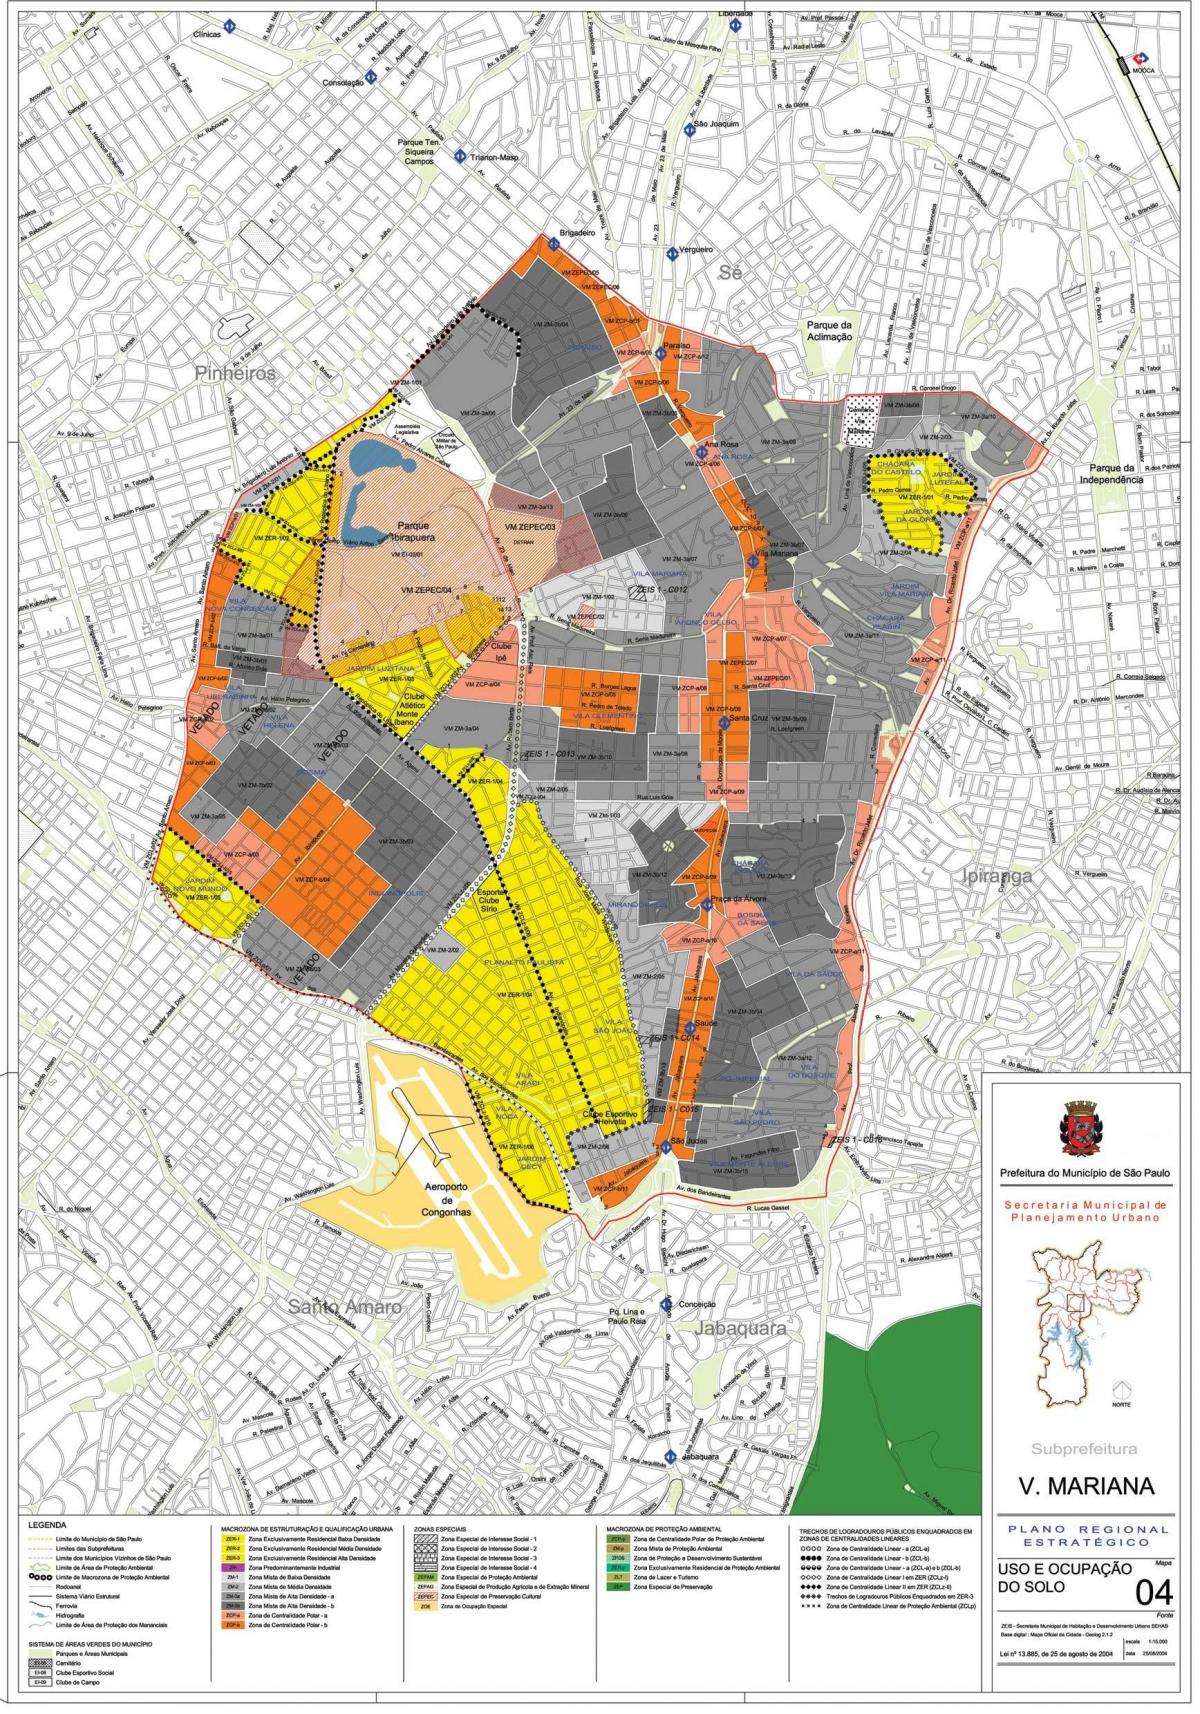 نقشه ویلا ماریانا, São Paulo - اشغال خاک